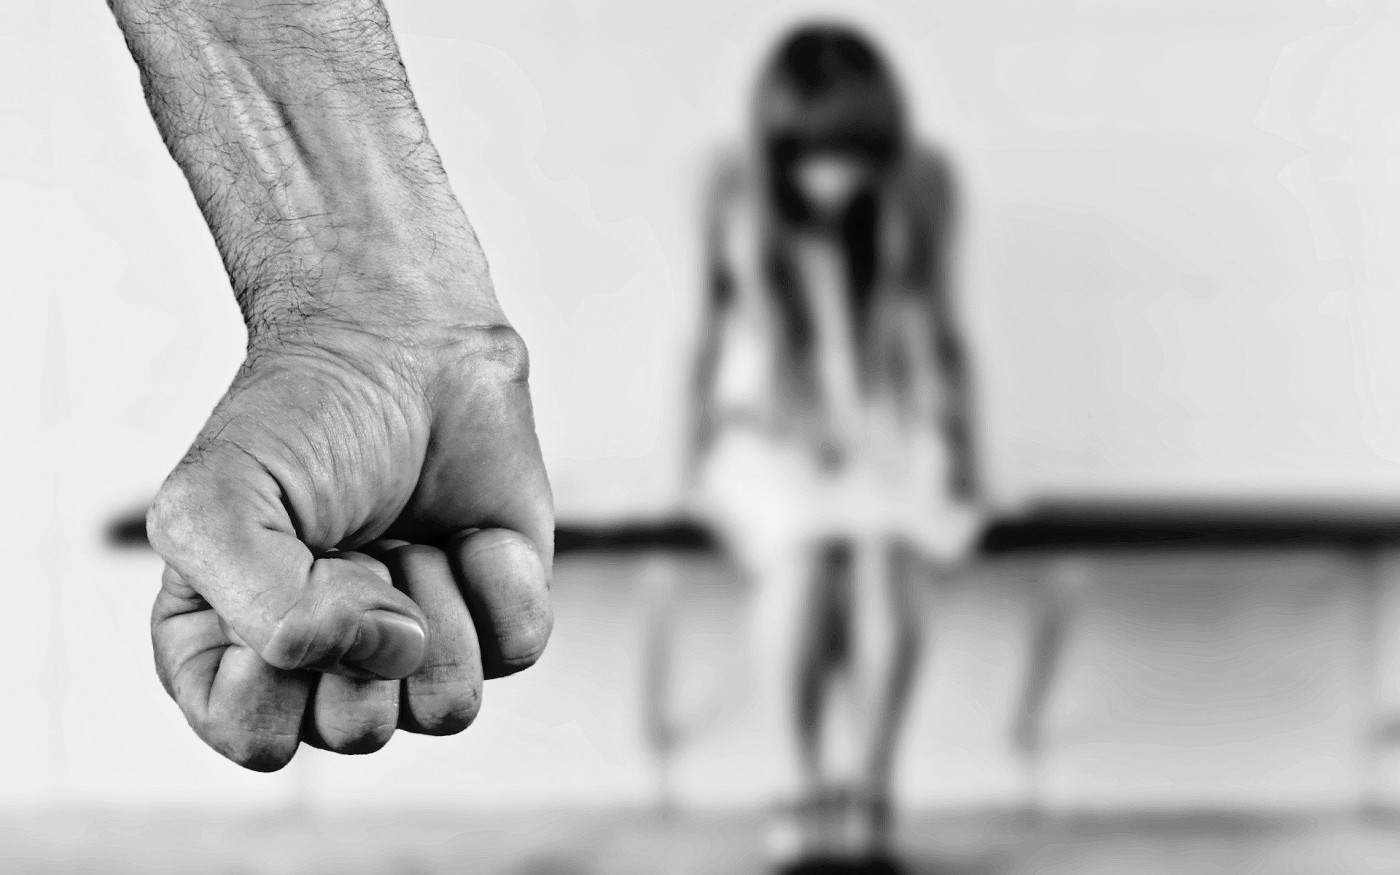 250 Fälle von häuslicher Gewalt im Landkreis Gifhorn - und das ist wohl nur die Spitze des Eisbergs